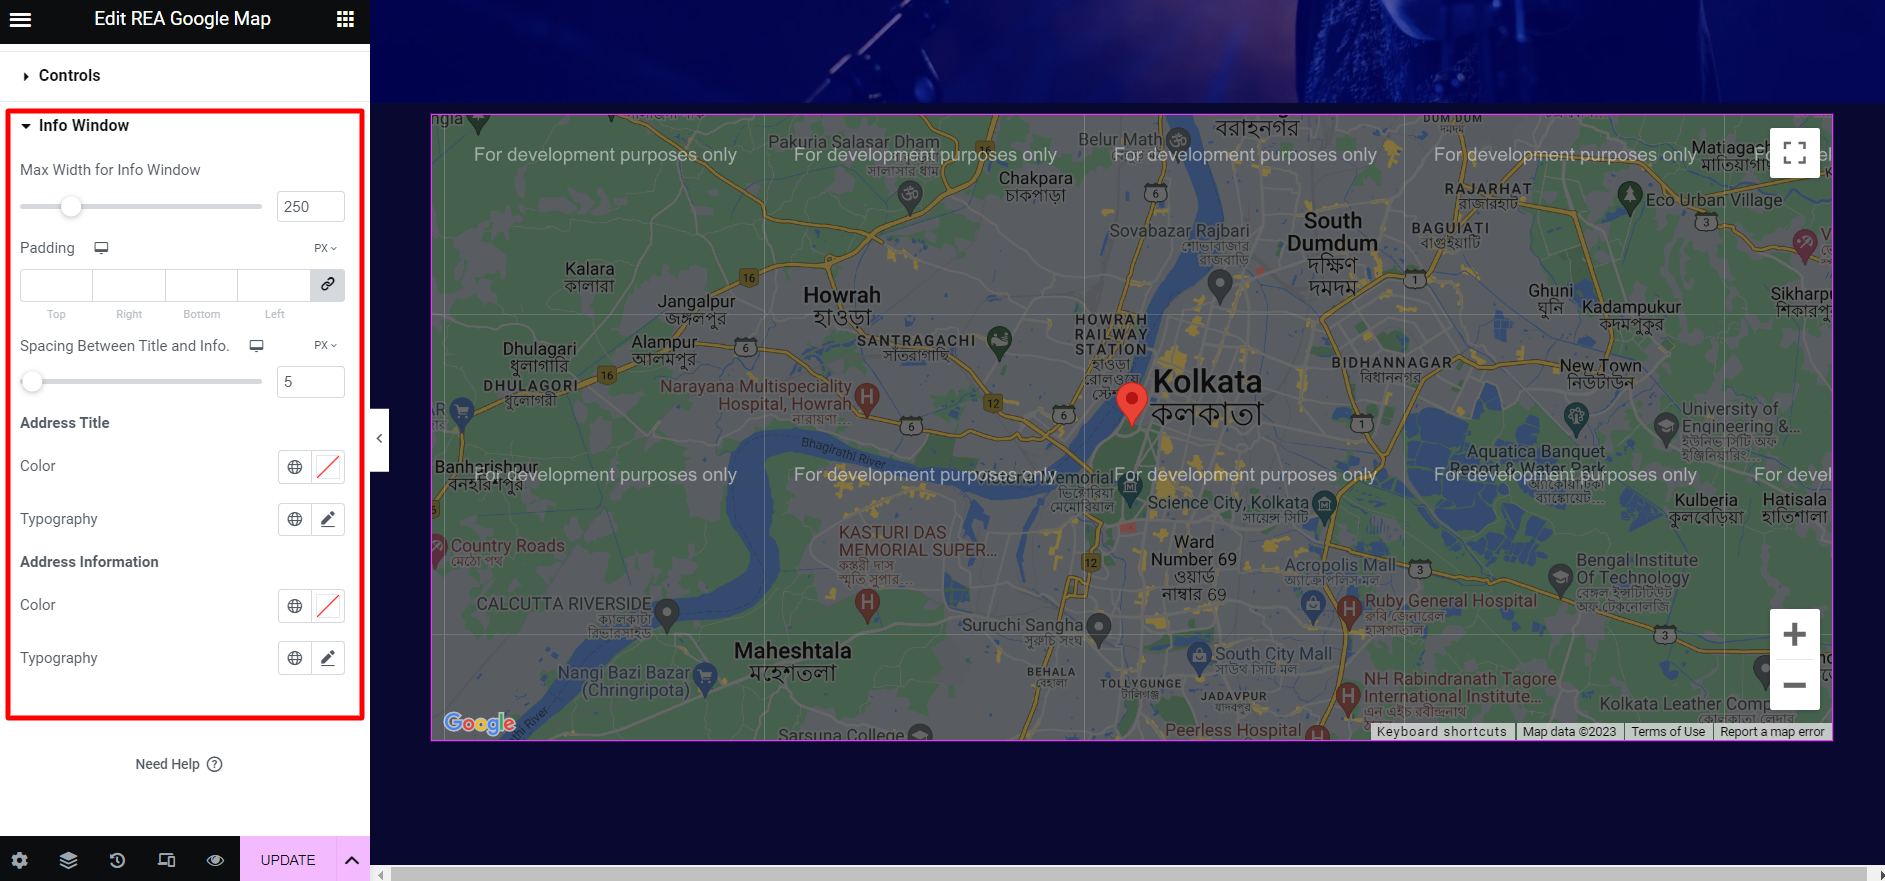 REA Google Maps- Info Window